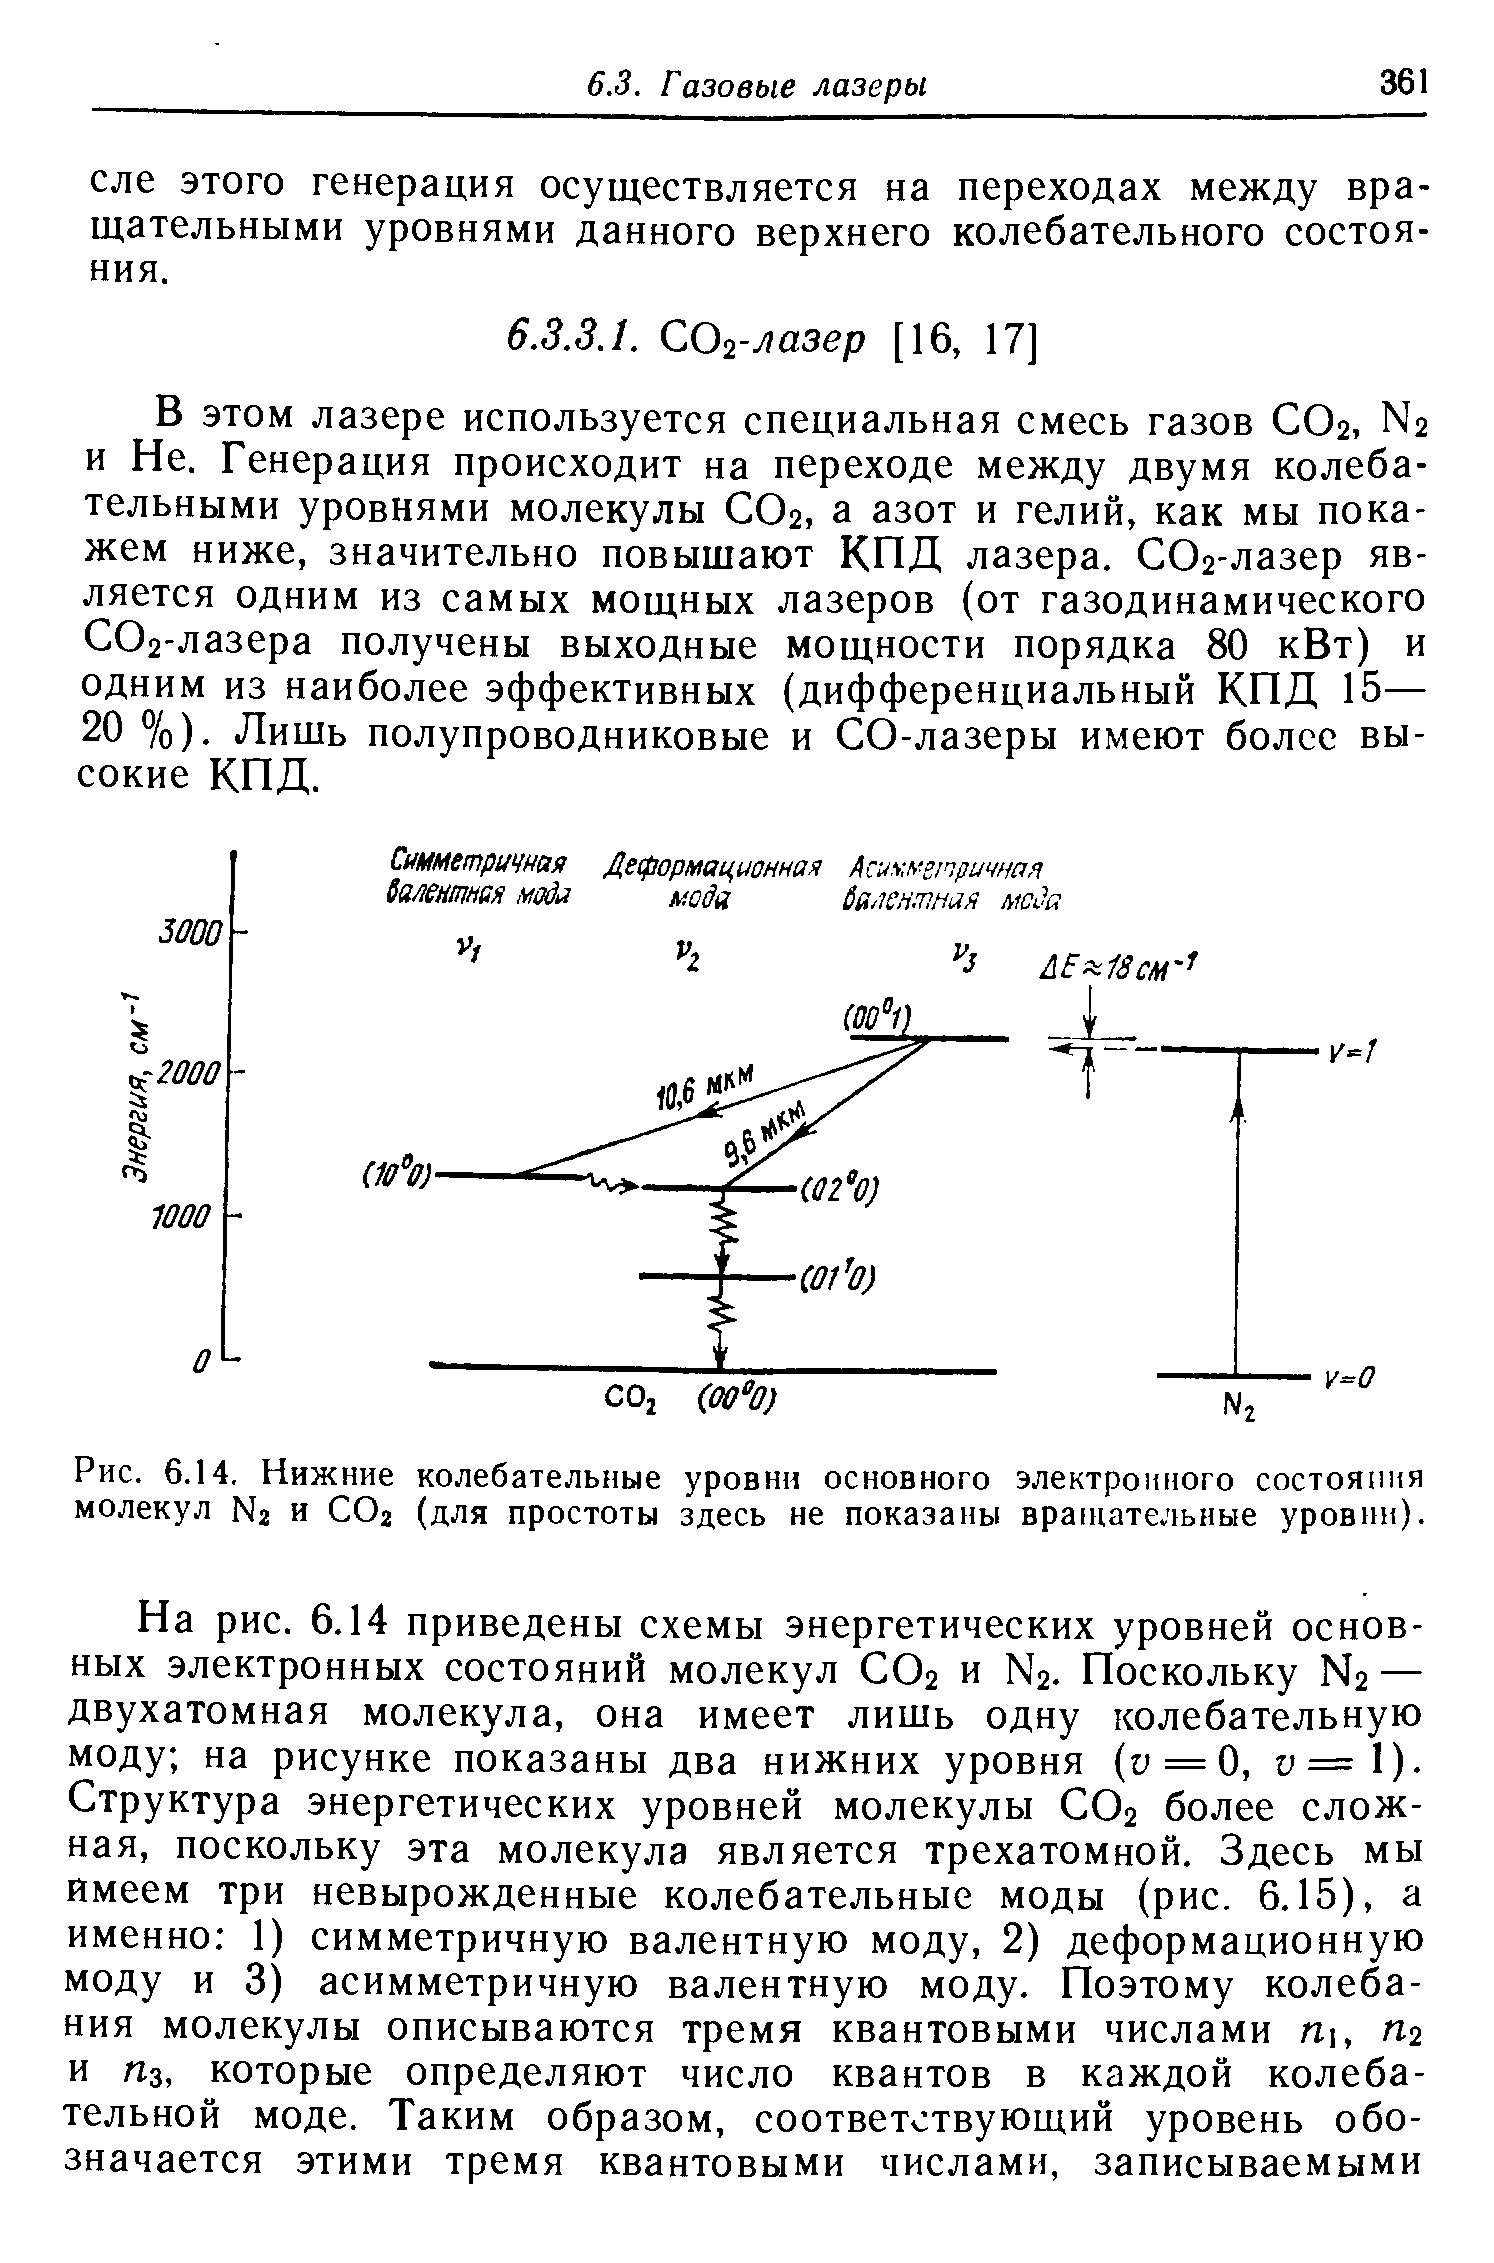 Рис. 6.14, Нижние колебательные уровни основного электронного состояния молекул N2 и СО2 (для простоты здесь не показаны вращательные уровни).
